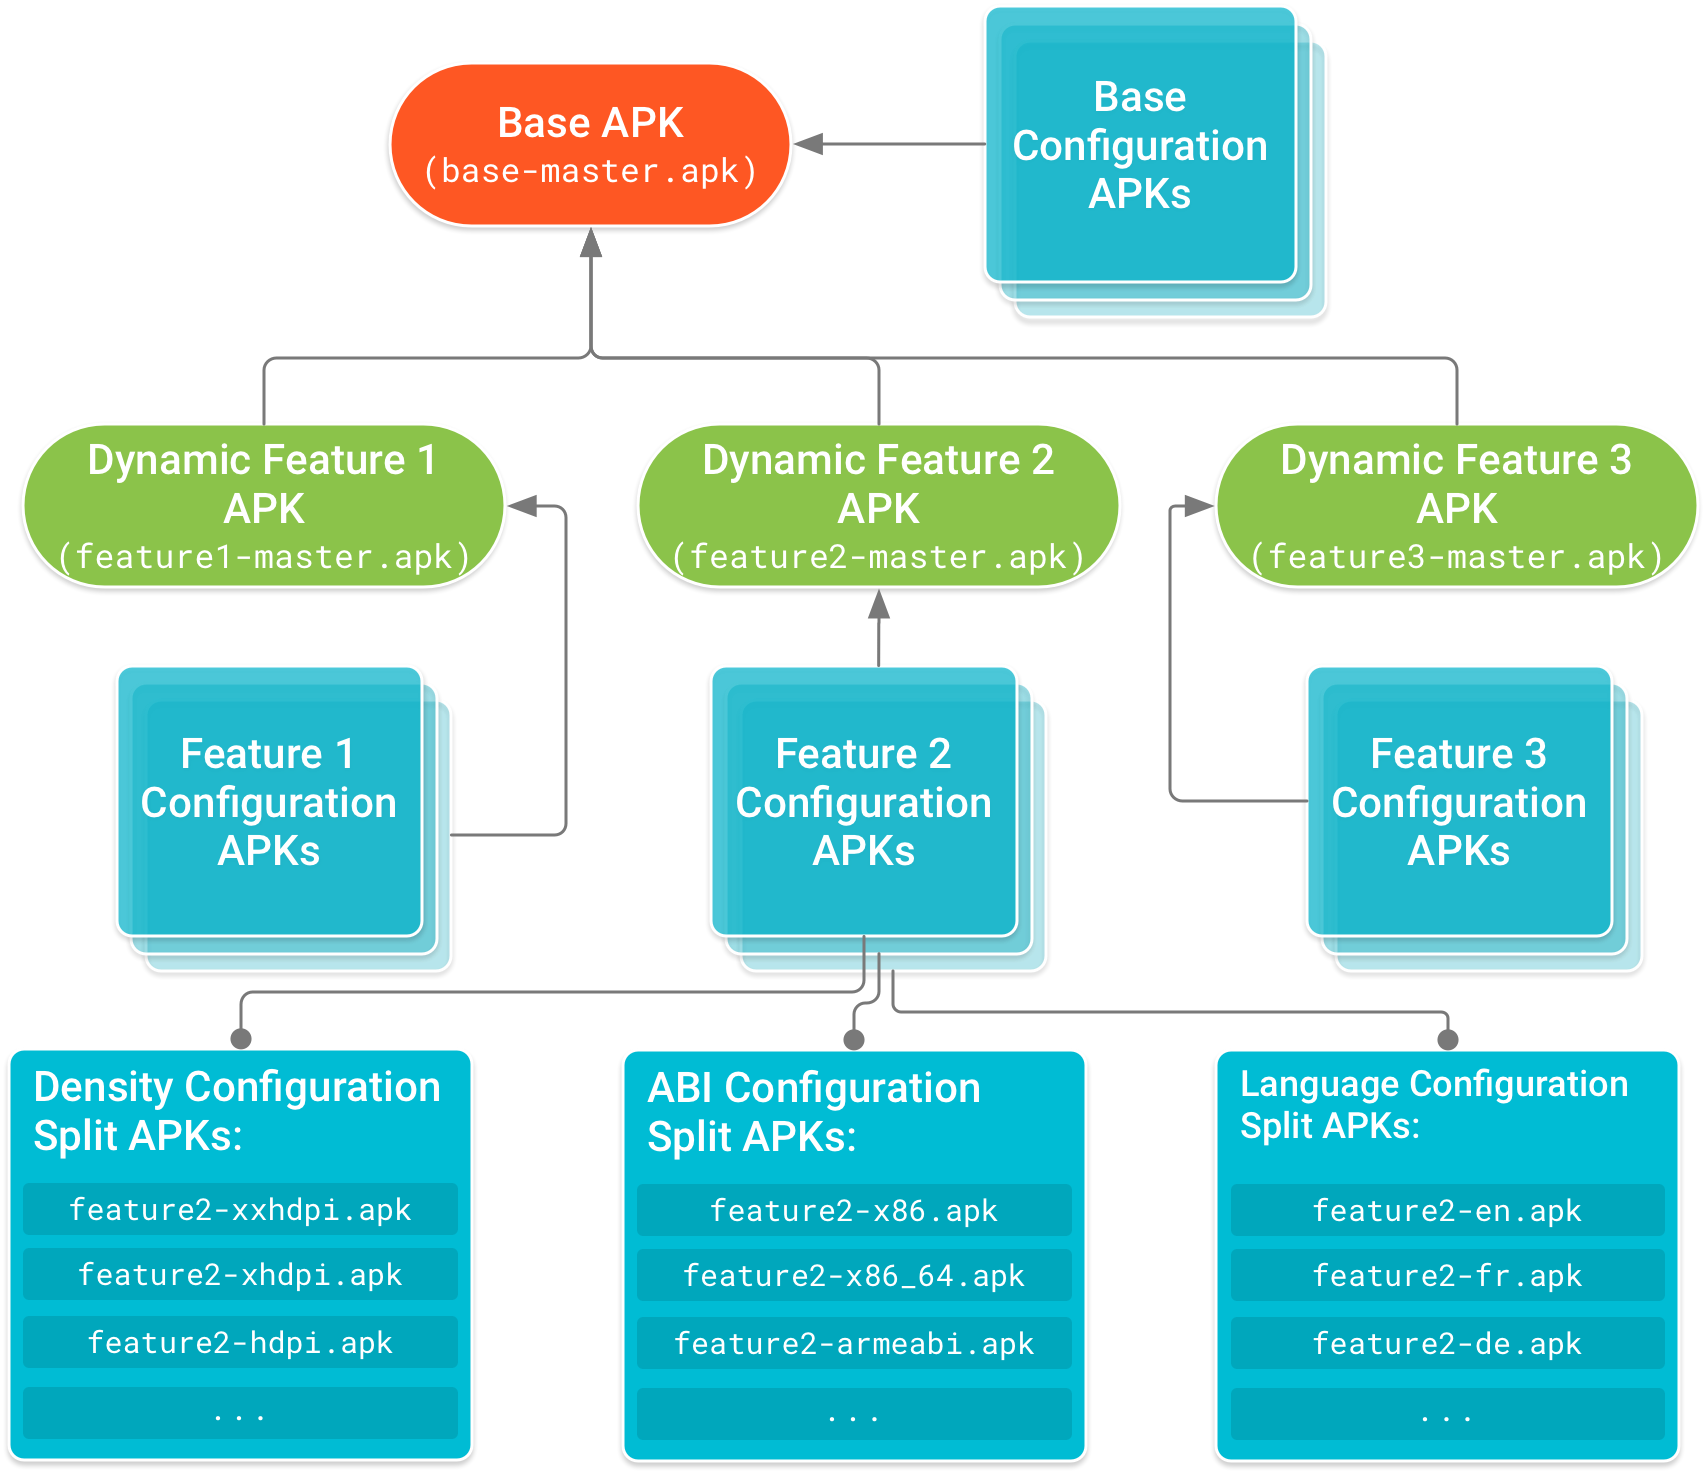 تظهر حزمة APK الأساسية في رأس الشجرة إذا كانت حِزم APK لوحدة الميزات
        تعتمد عليها. إنّ حِزم APK للتهيئة التي تتضمن رموزًا
 خاصة بإعدادات الجهاز ومواردها للقاعدة
 وكل حزمة APK لوحدة ميزات
 تشكِّل العقد التفصيلية لشجرة التبعية.